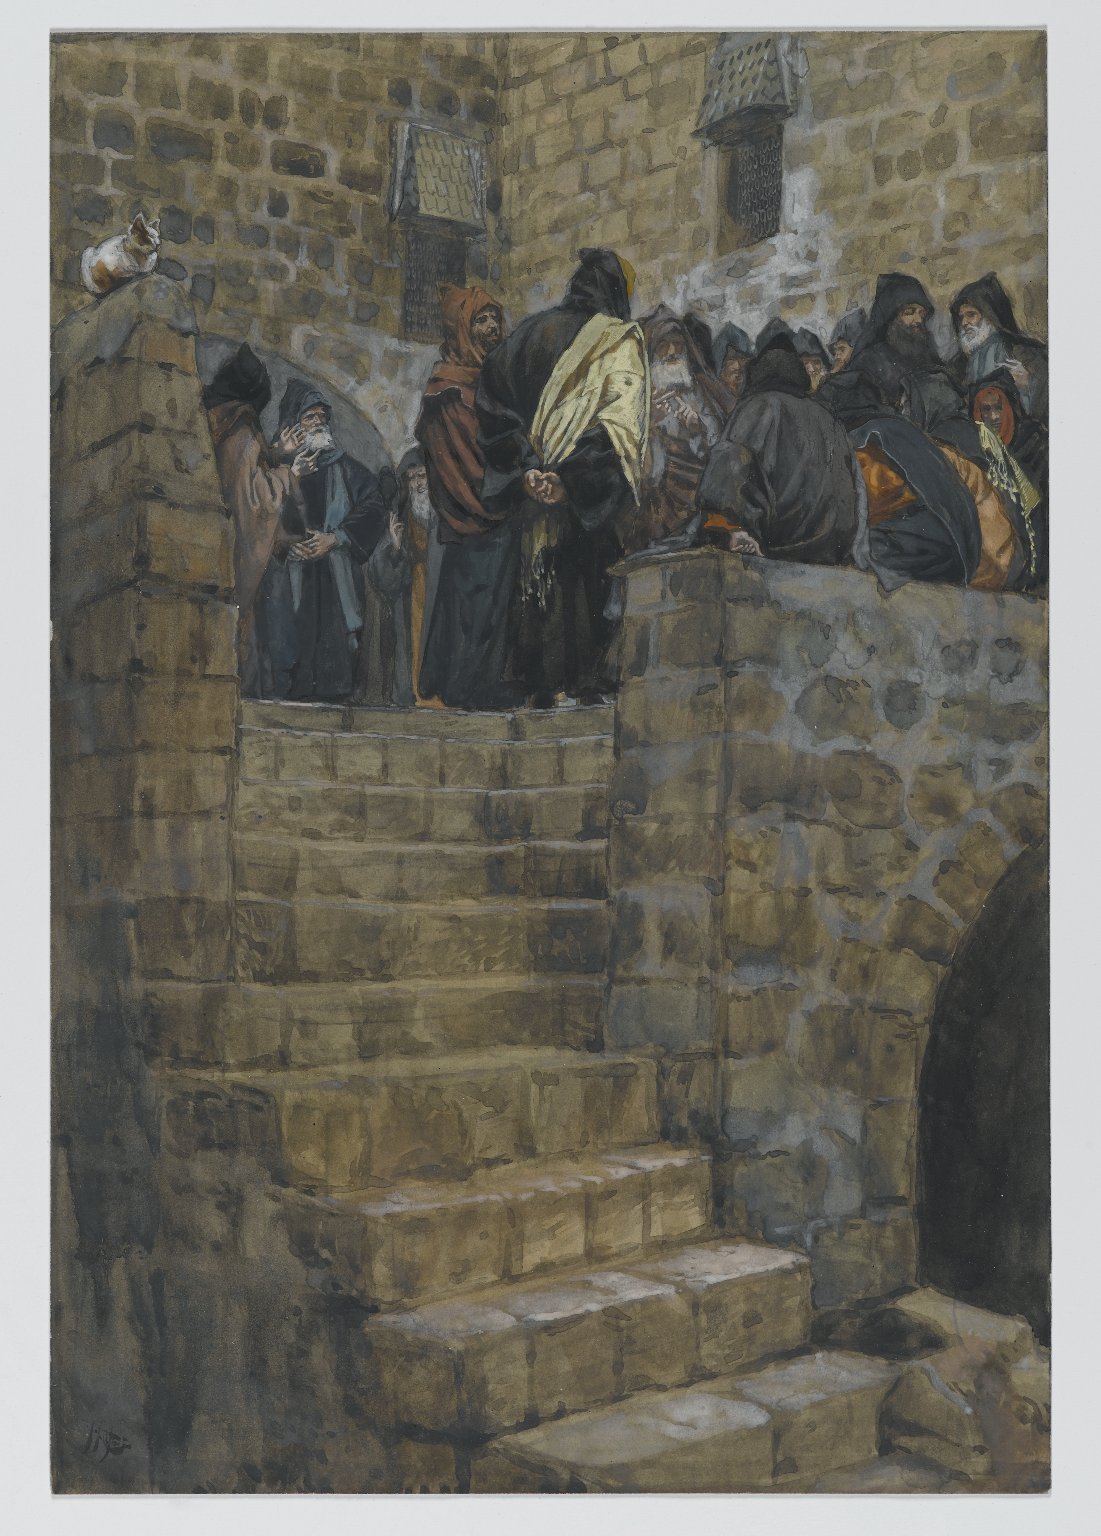 187. Совет Каиафы, 1886-94, 26.4 x 18.1 cm, Бумага, акварель по графиту 